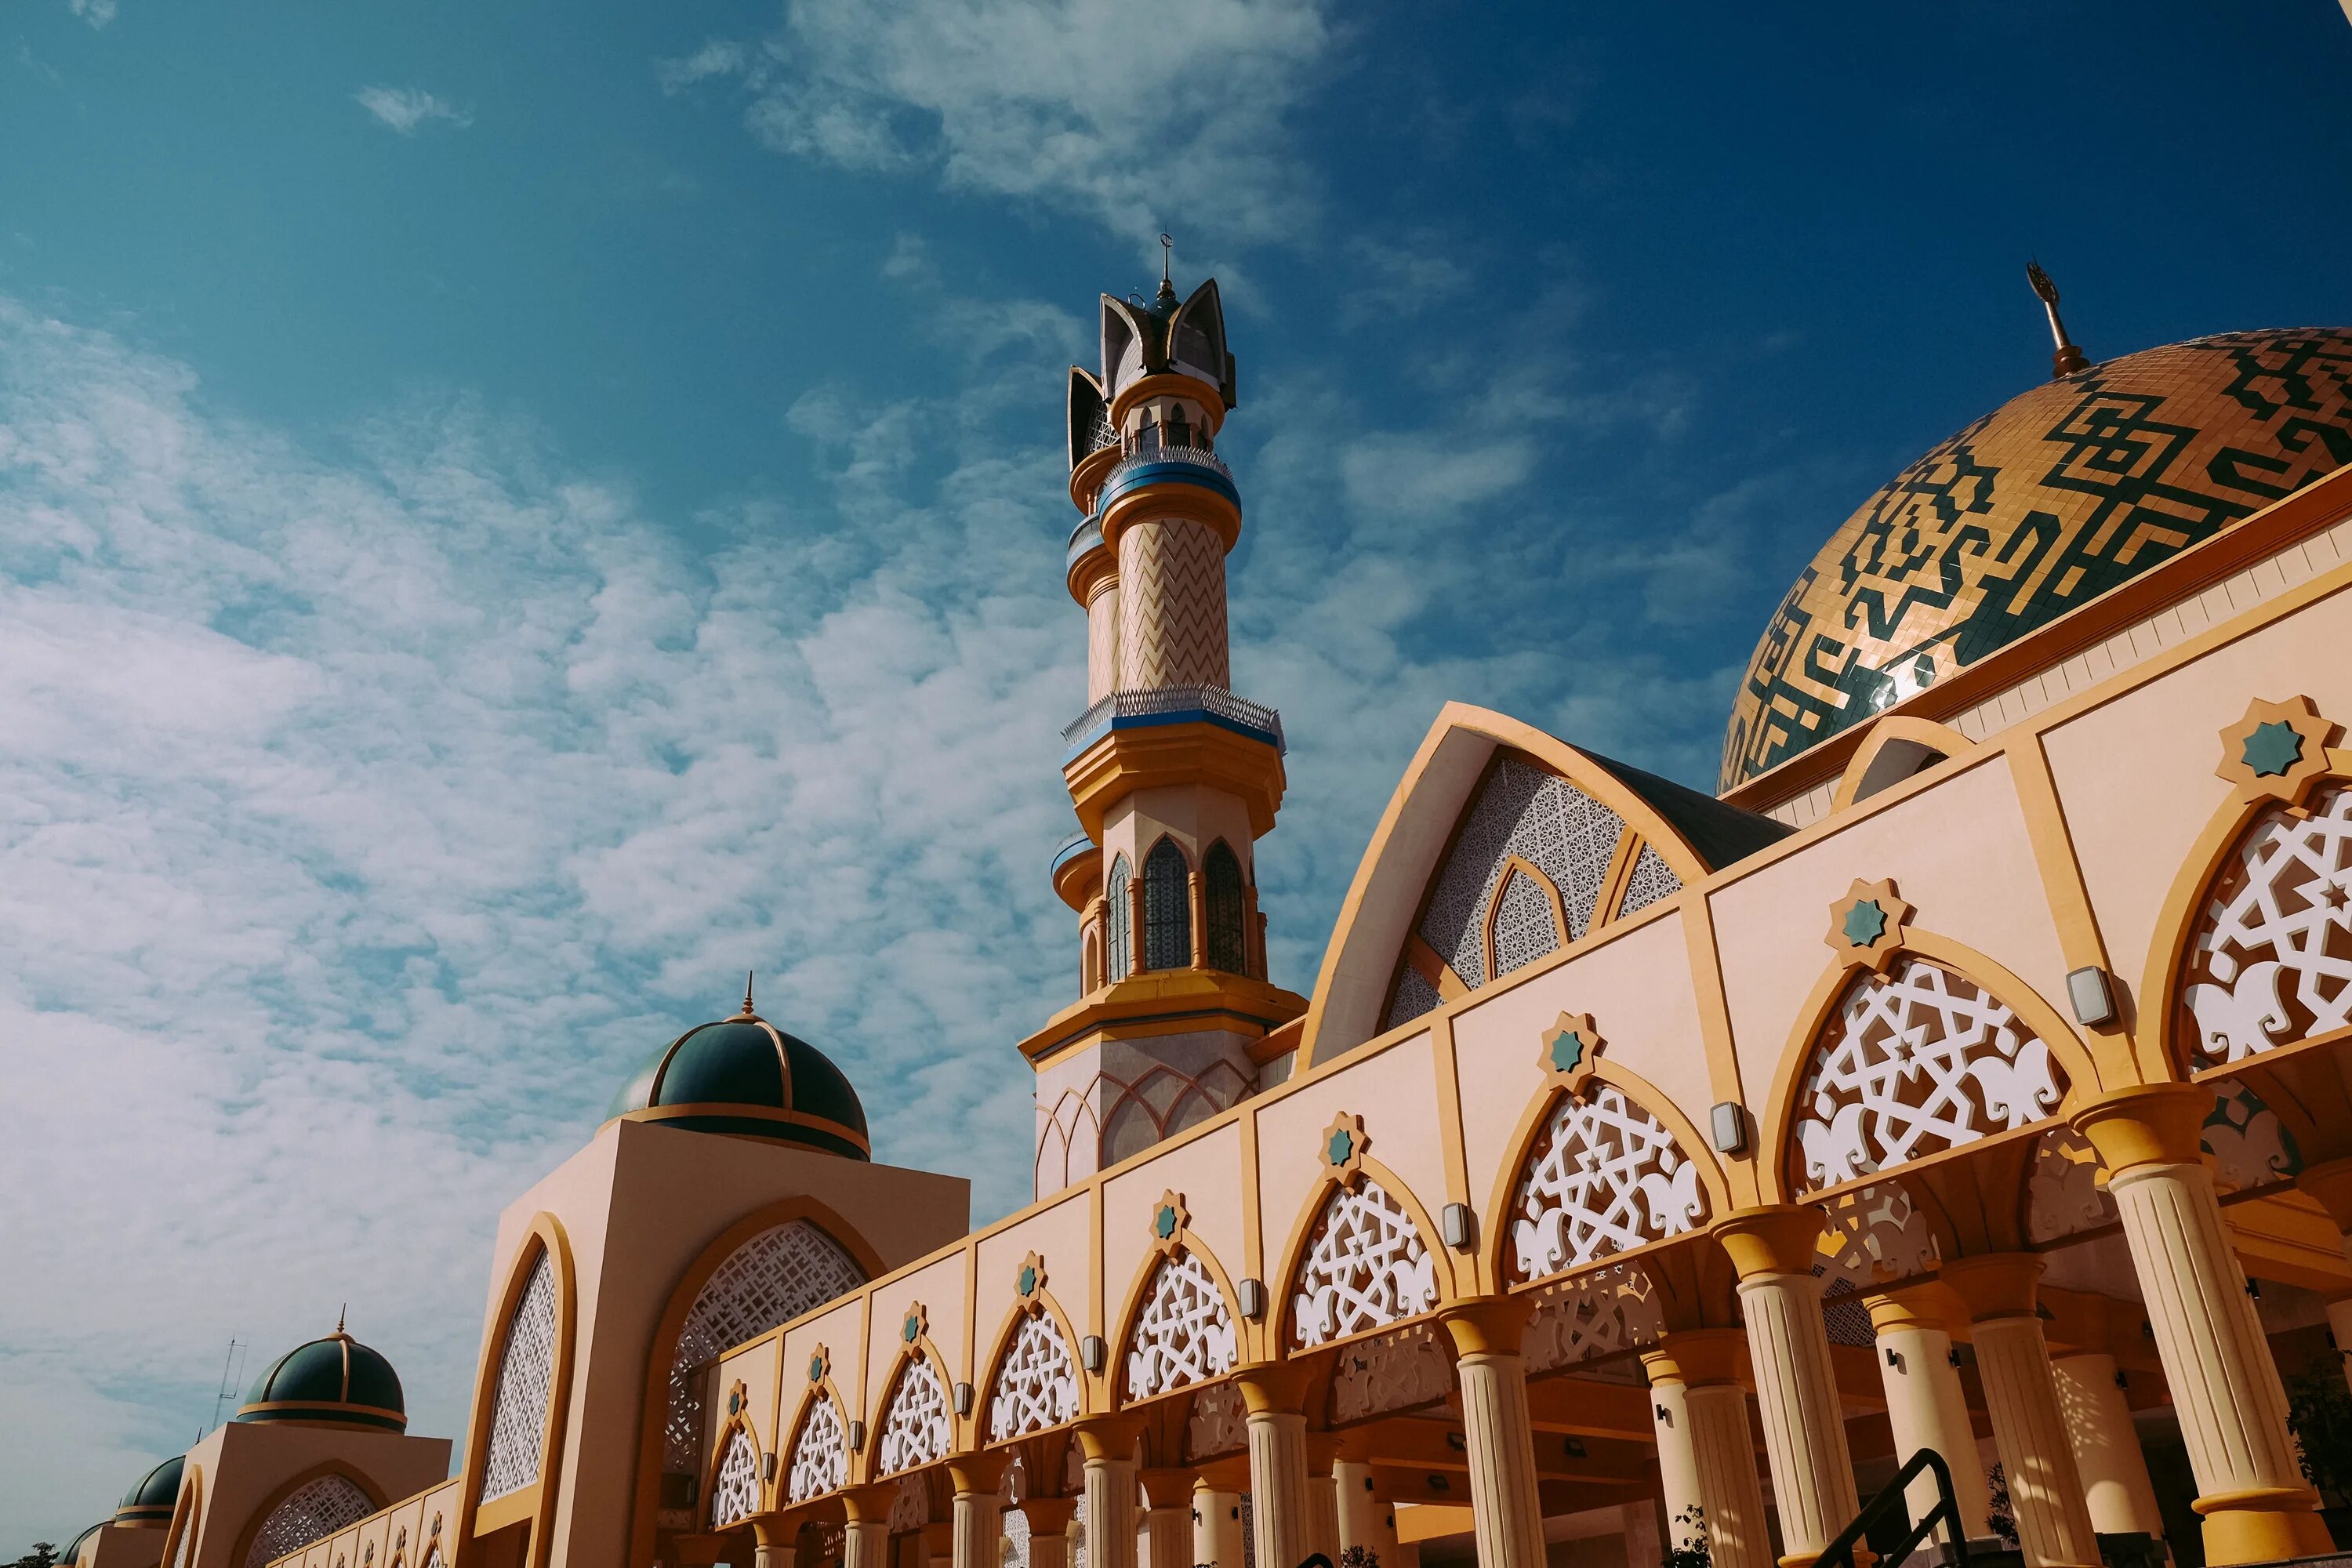 Мечеть халяль. Мечеть 1080p. Мечеть HDR. Пустыня мечеть картинки. Фото мечети в высоком разрешении.